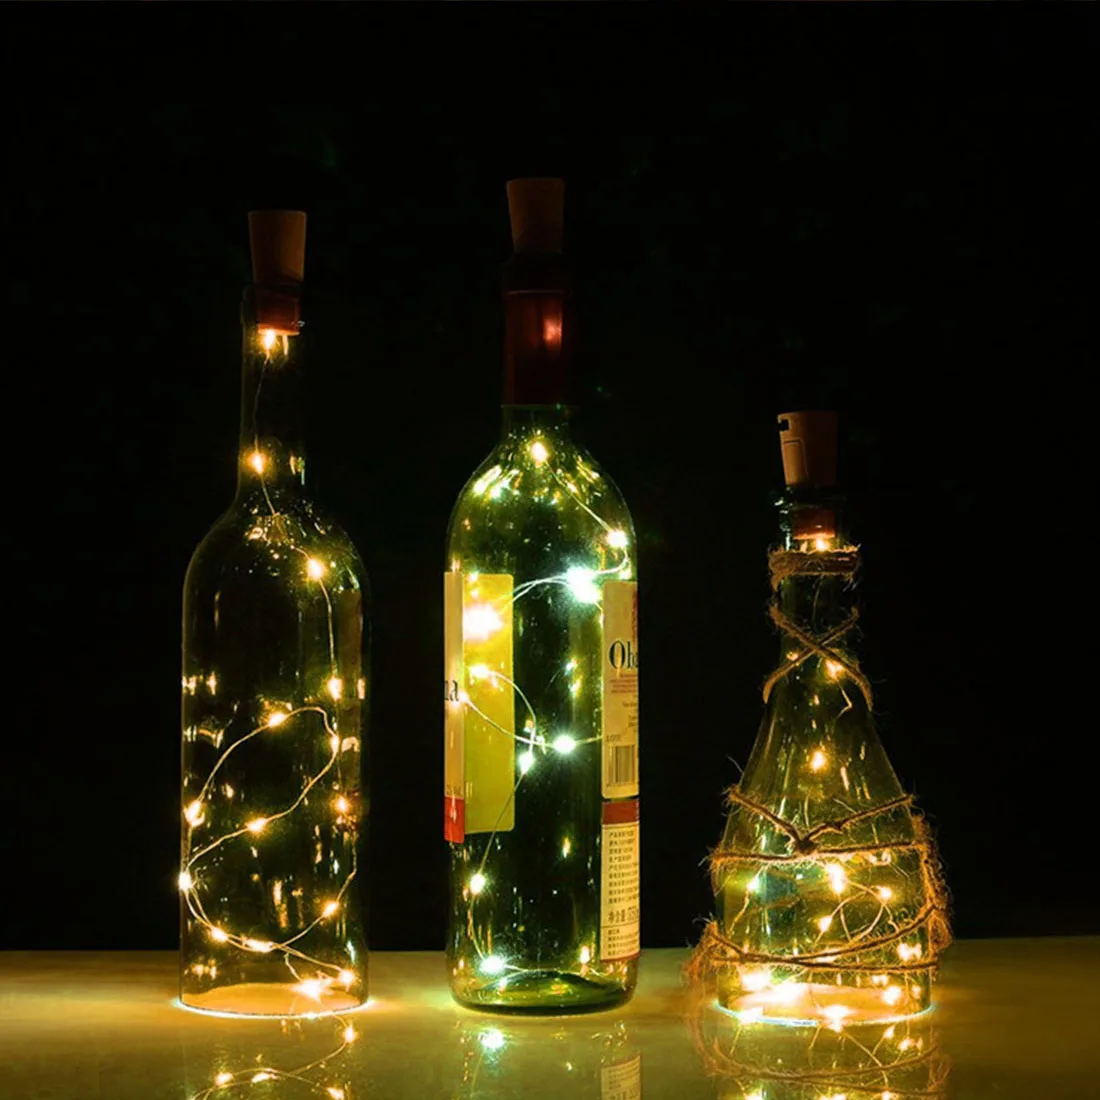 20 светодиодов/15 светодиодов для винных бутылок гирлянда в бутылке пробковая батарея питание Звездное DIY рождественские гирлянды огни для вечерние Хэллоуин Свадьба